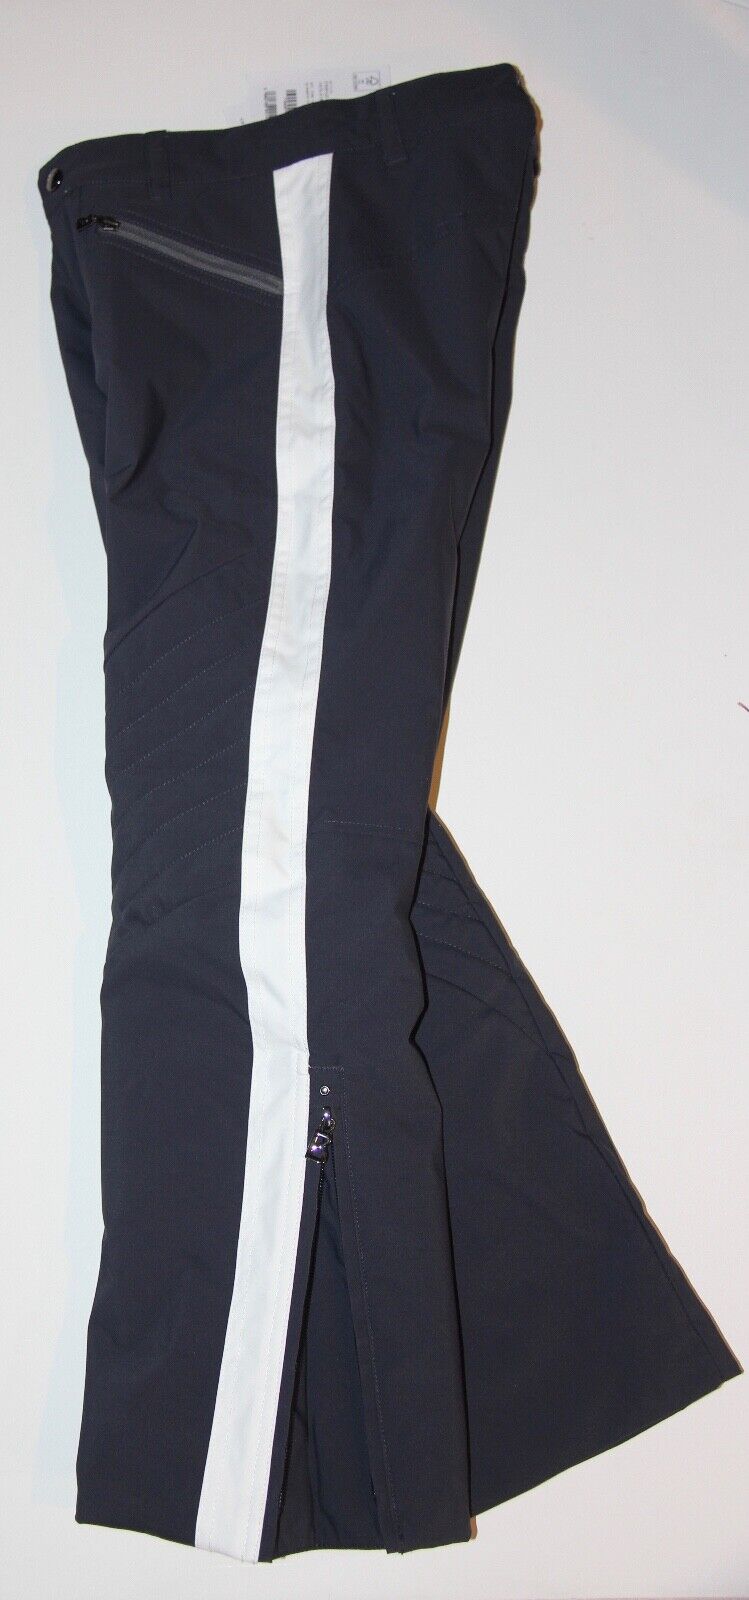 Bogner Girls Frenzi-T Insulated Ski Pant - Large US 12 - Navy Blue/White - NEW Bogner Frenzi-T 1570-5186 464 - фотография #4